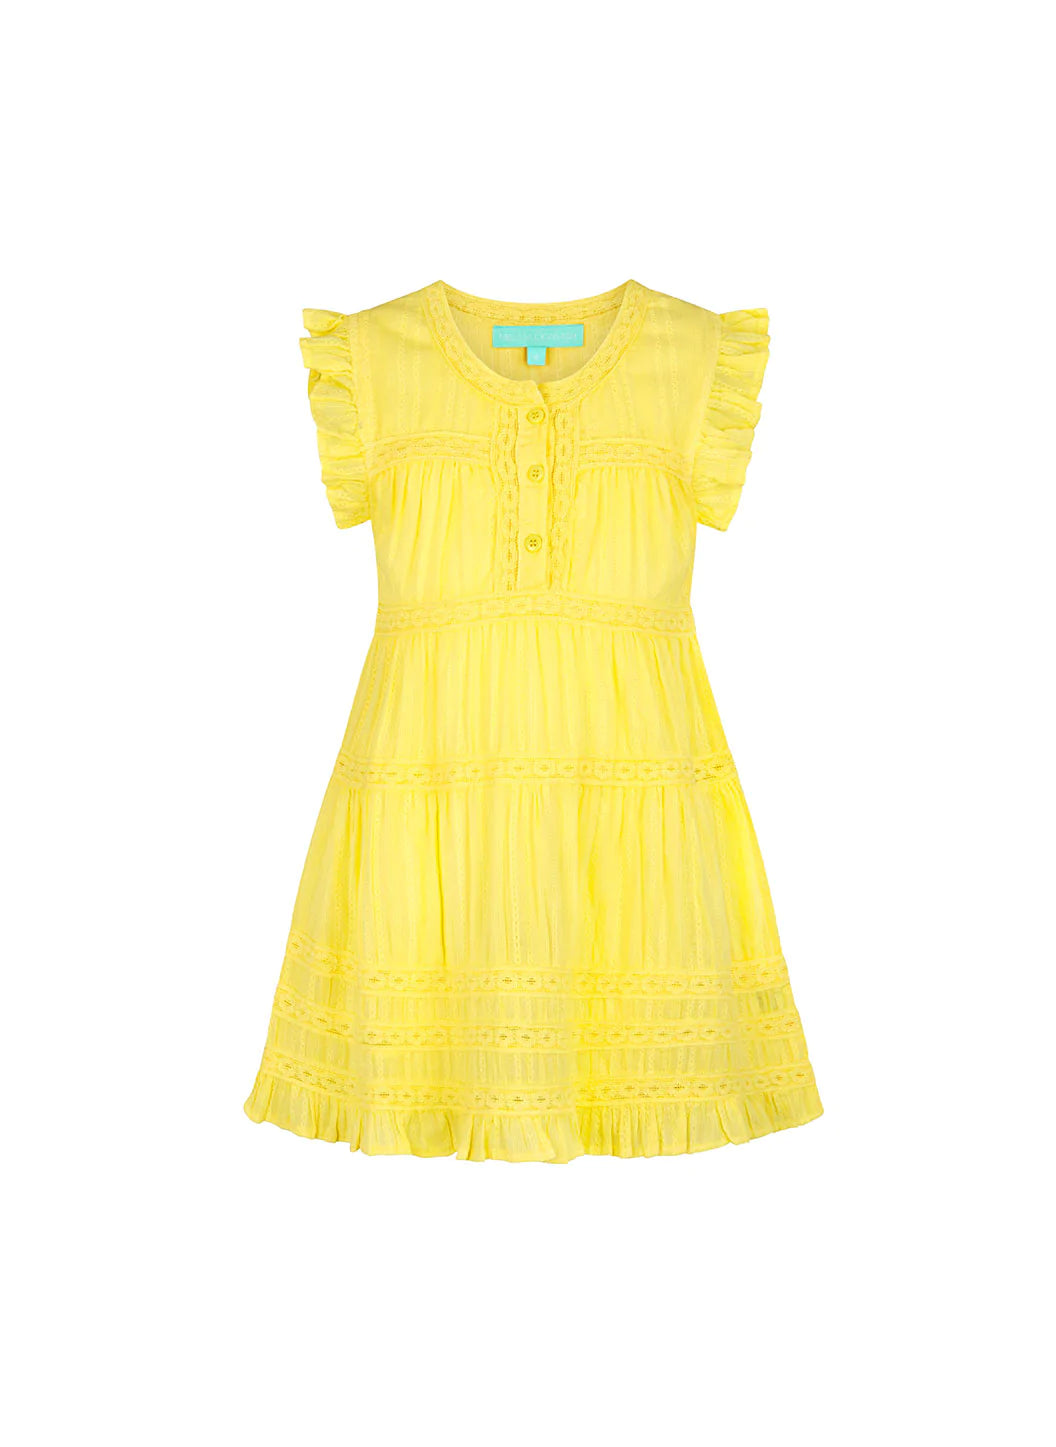 Baby_Rebekah_Yellow_Dress_Cutout_2023